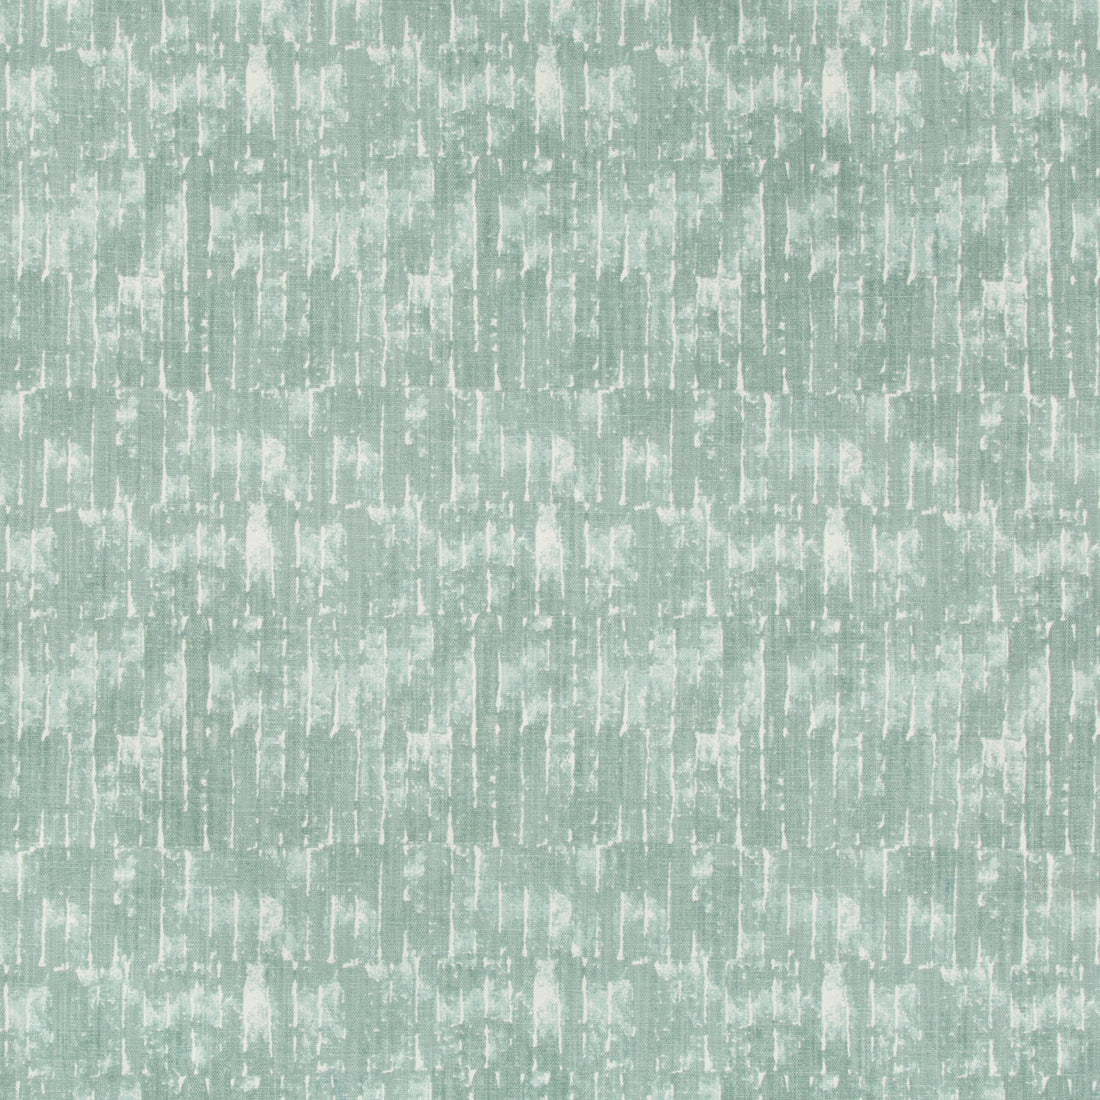 Kravet Basics fabric in hiroko-13 color - pattern HIROKO.13.0 - by Kravet Basics